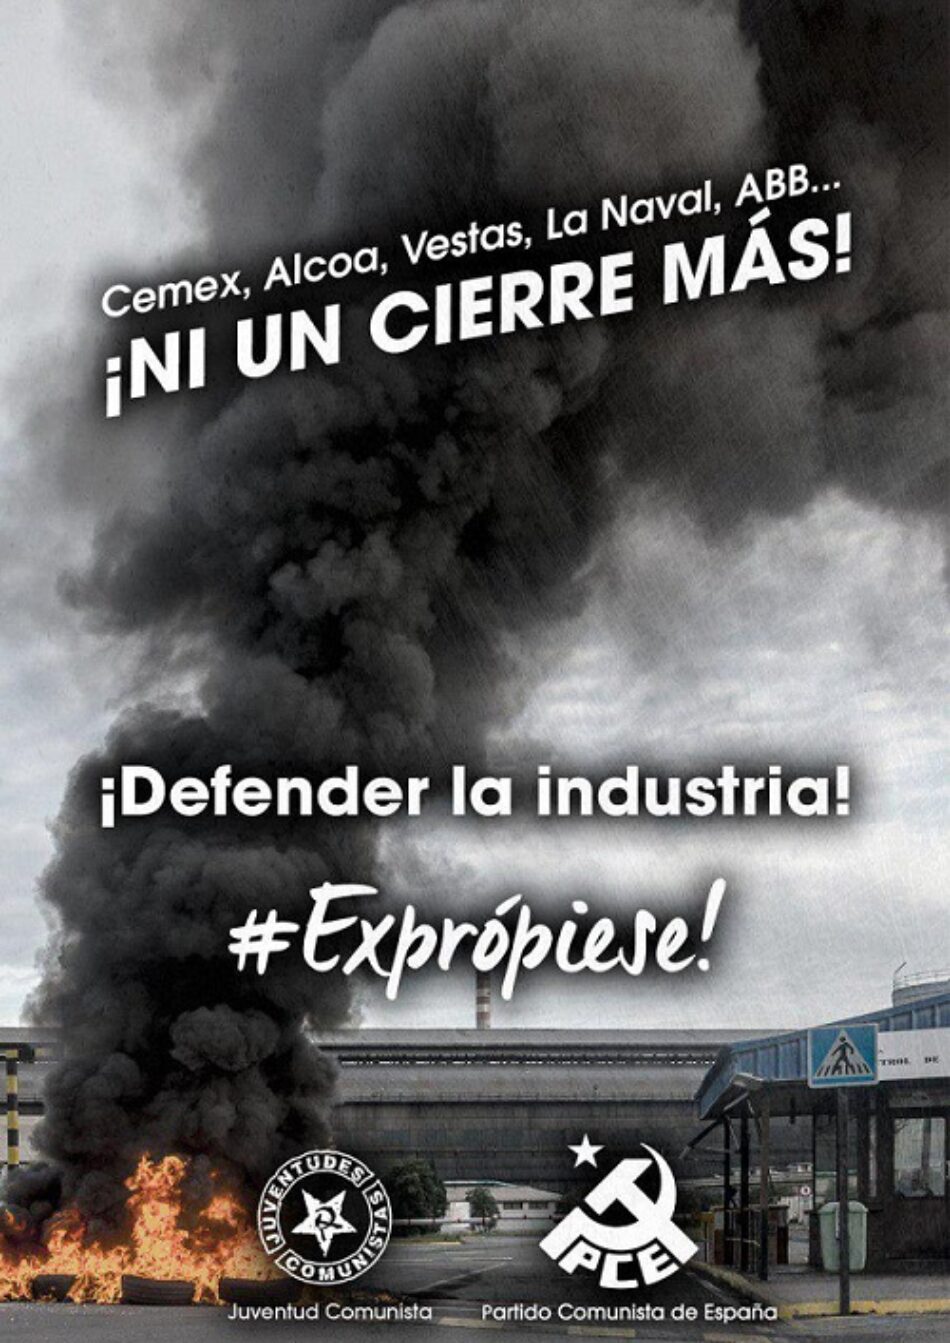 El PCE y la UJCE de León apoyan el 15-N exigiendo “¡Reindustrialización Ya! Por la juventud y el futuro de León”